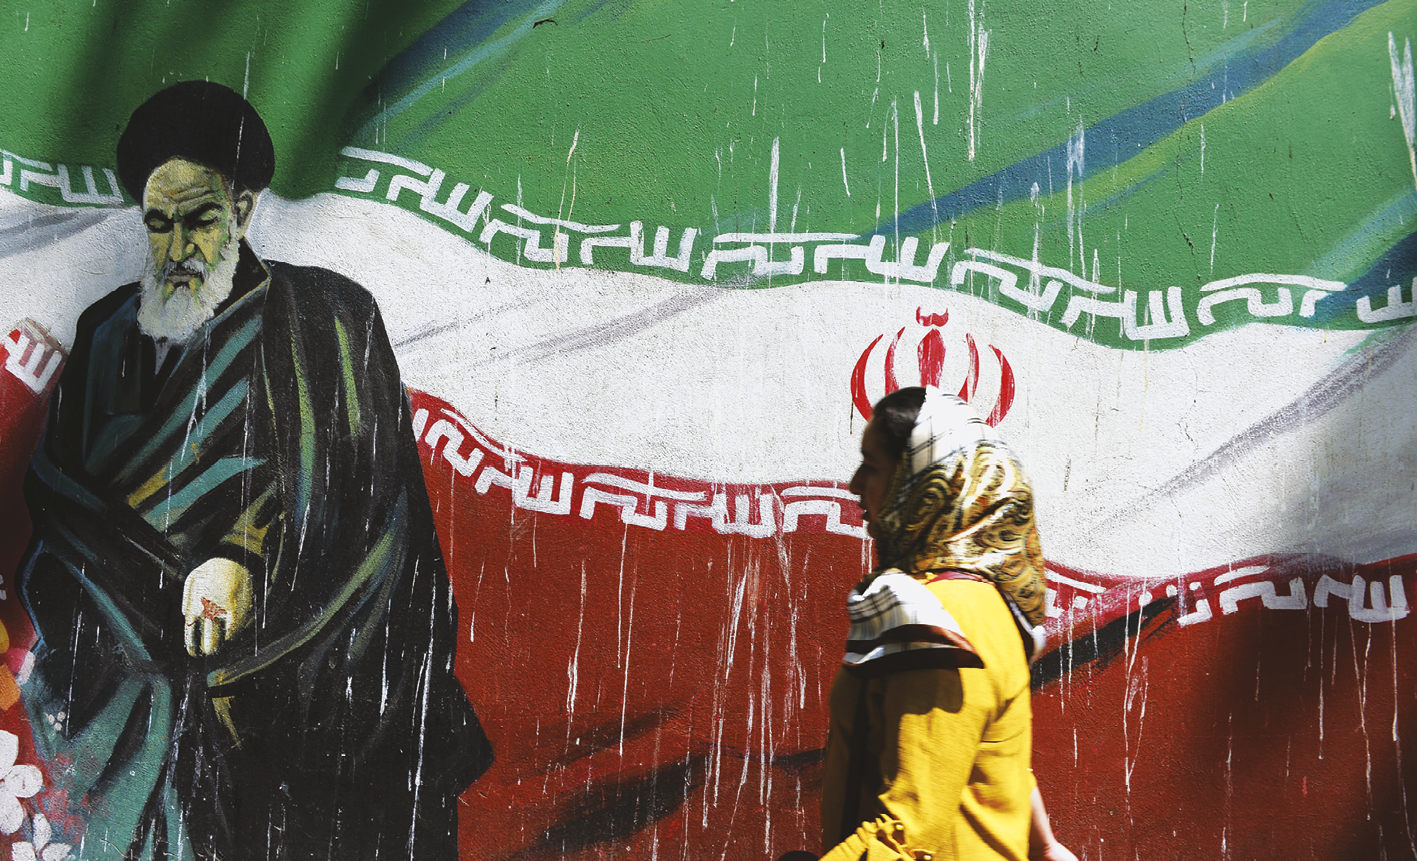 Fotografia. Ao fundo, um muro com uma pintura representando a bandeira iraniana: três listras horizontais, uma verde (acima), uma branca (no centro) e uma vermelha (abaixo), com inscrições islâmicas em branco acima e abaixo da faixa do centro e um emblema vermelho no centro da faixa branca. À esquerda, pintado diante da bandeira, um senhor de barba longa e branca, vestindo túnica e um turbante pretos. Em primeiro plano, à direita, uma moça com um lenço amarelo cobrindo os cabelos e um casaco amarelo passa diante do muro, caminhando da direita para a esquerda.